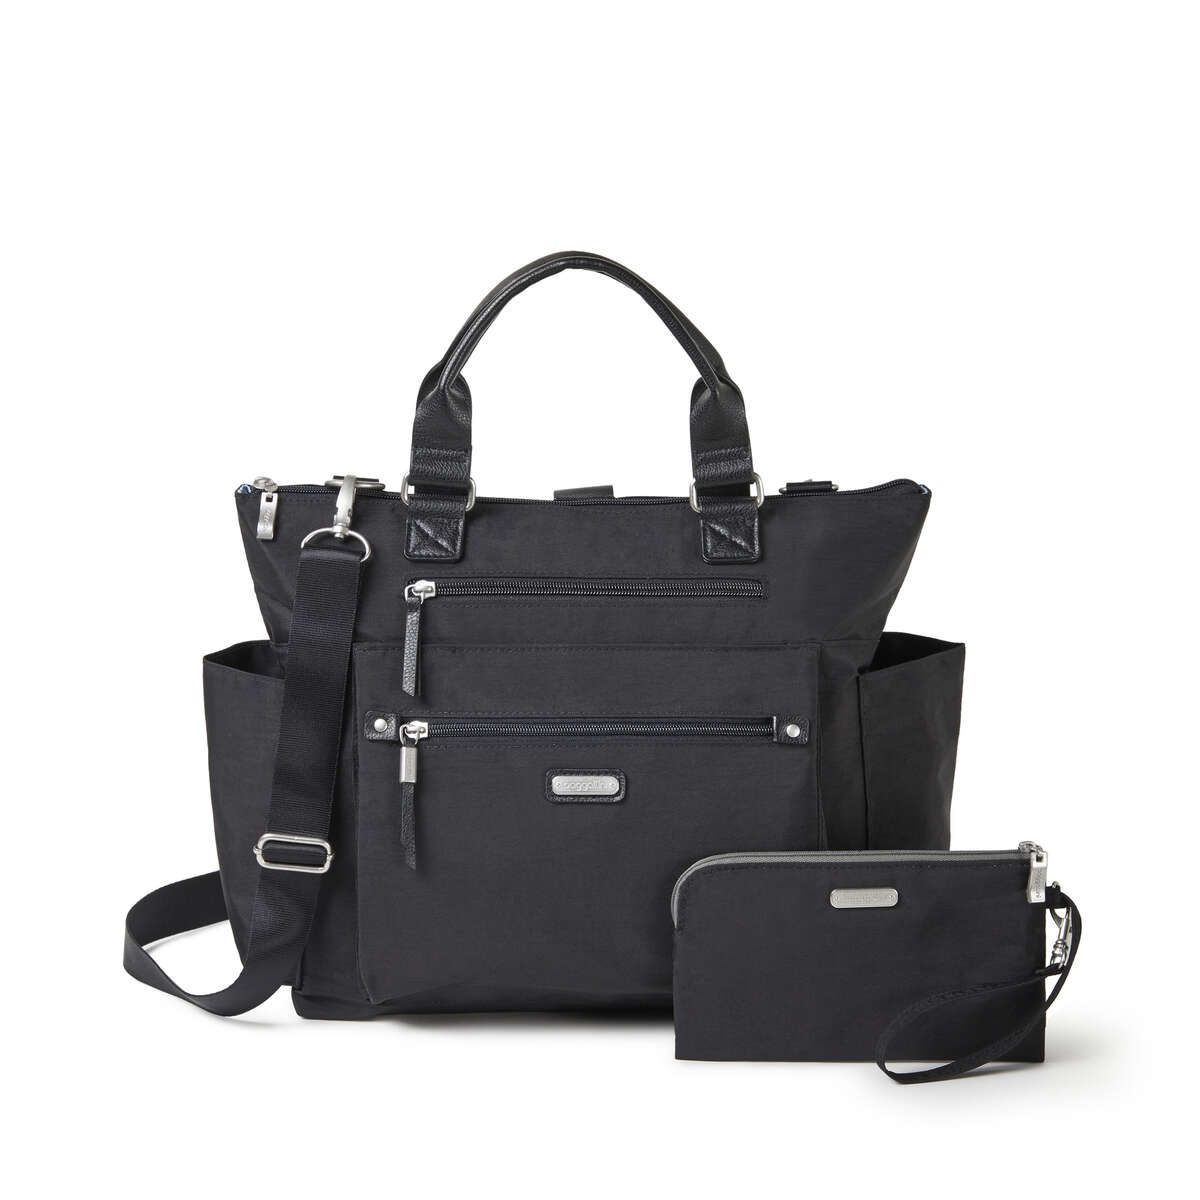 3-in-1 Leather Convertible Hobo/ Backpack/ Crossbody w/ Kangaroo